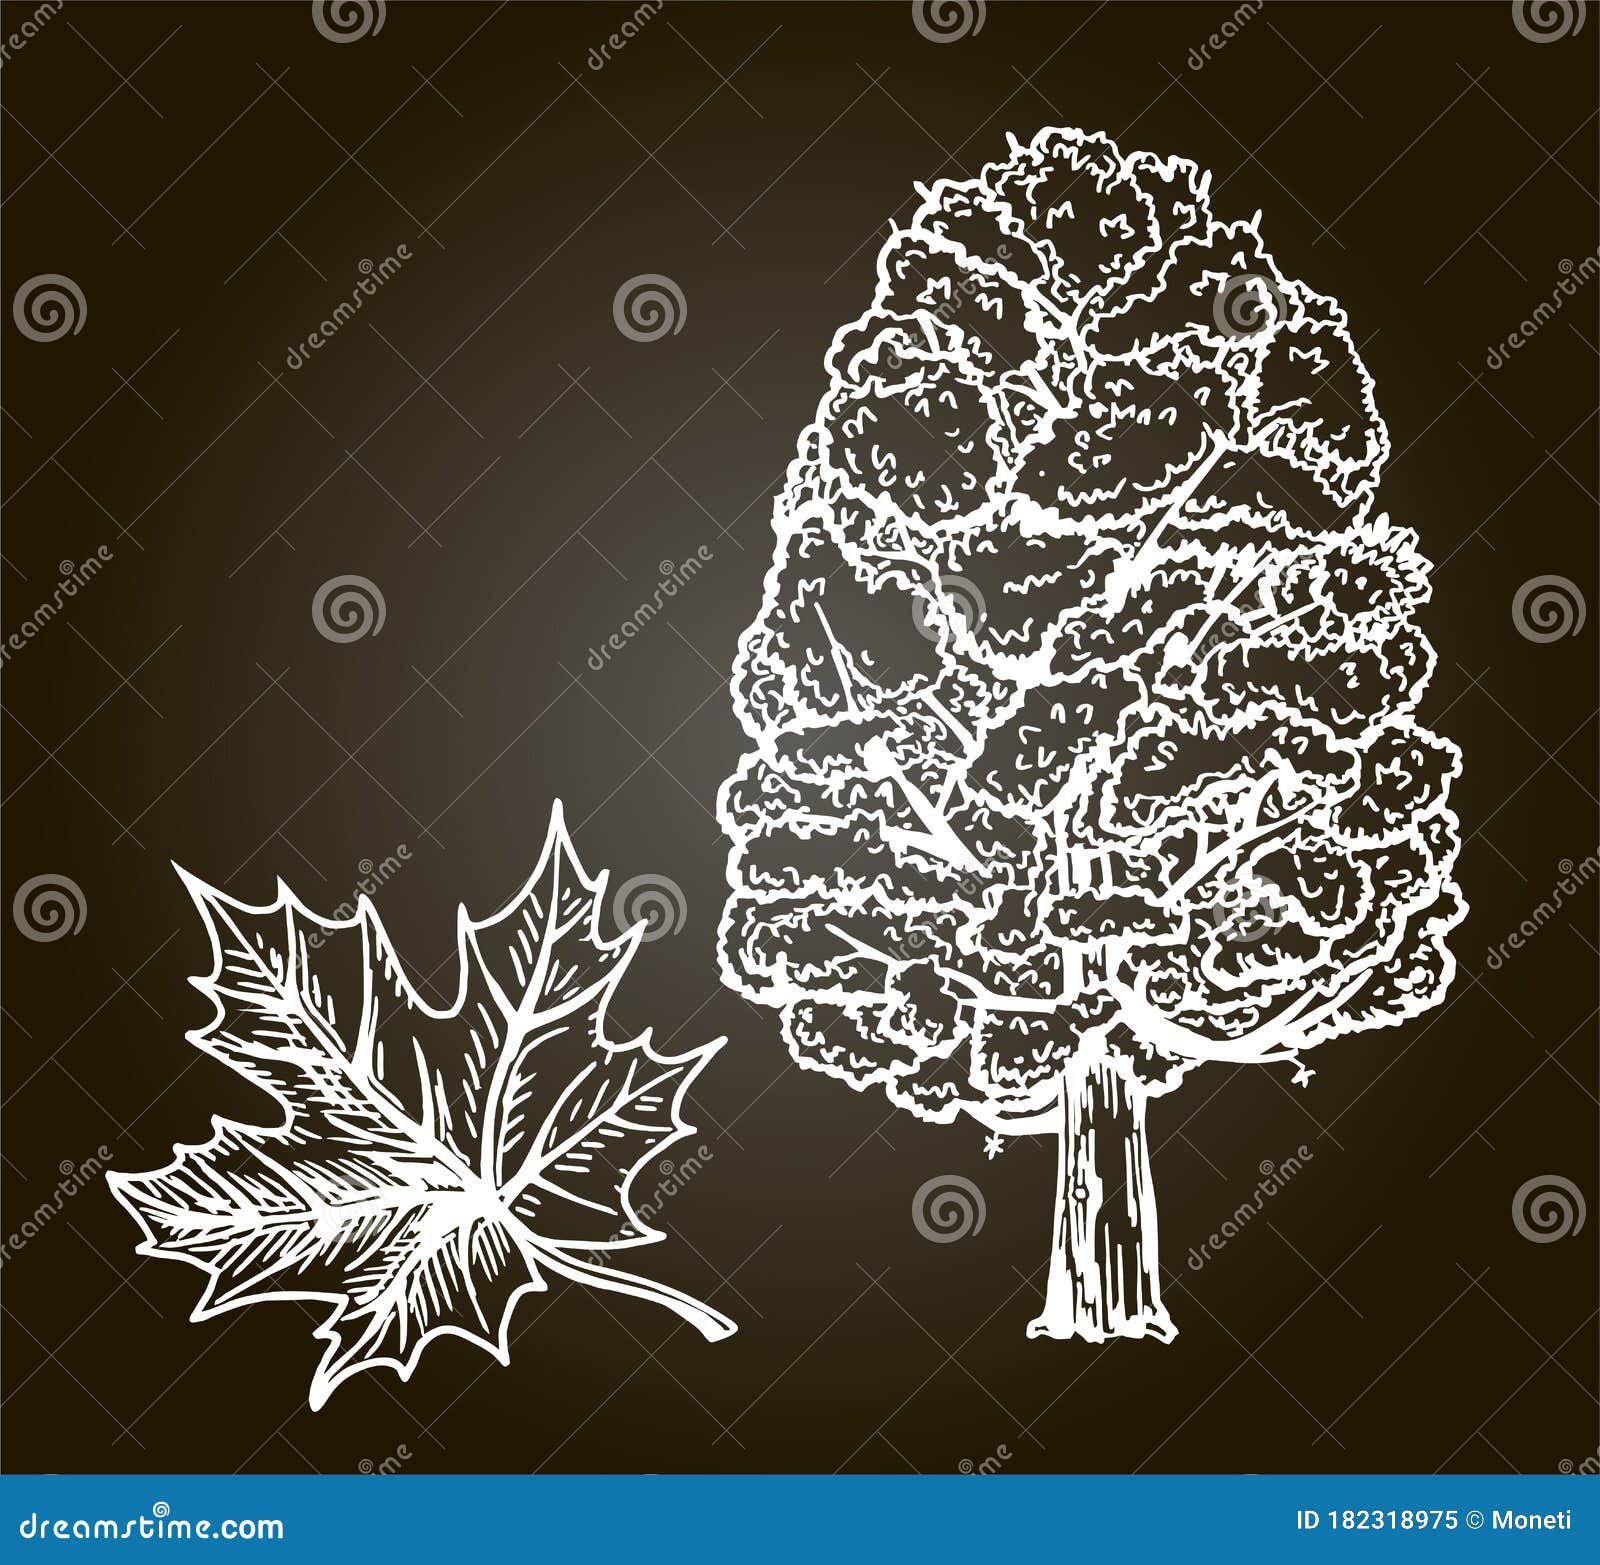 Ink Sketch Of Maple Leaf Stock Illustration - Download Image Now - Maple  Leaf, Vector, Sketch - iStock